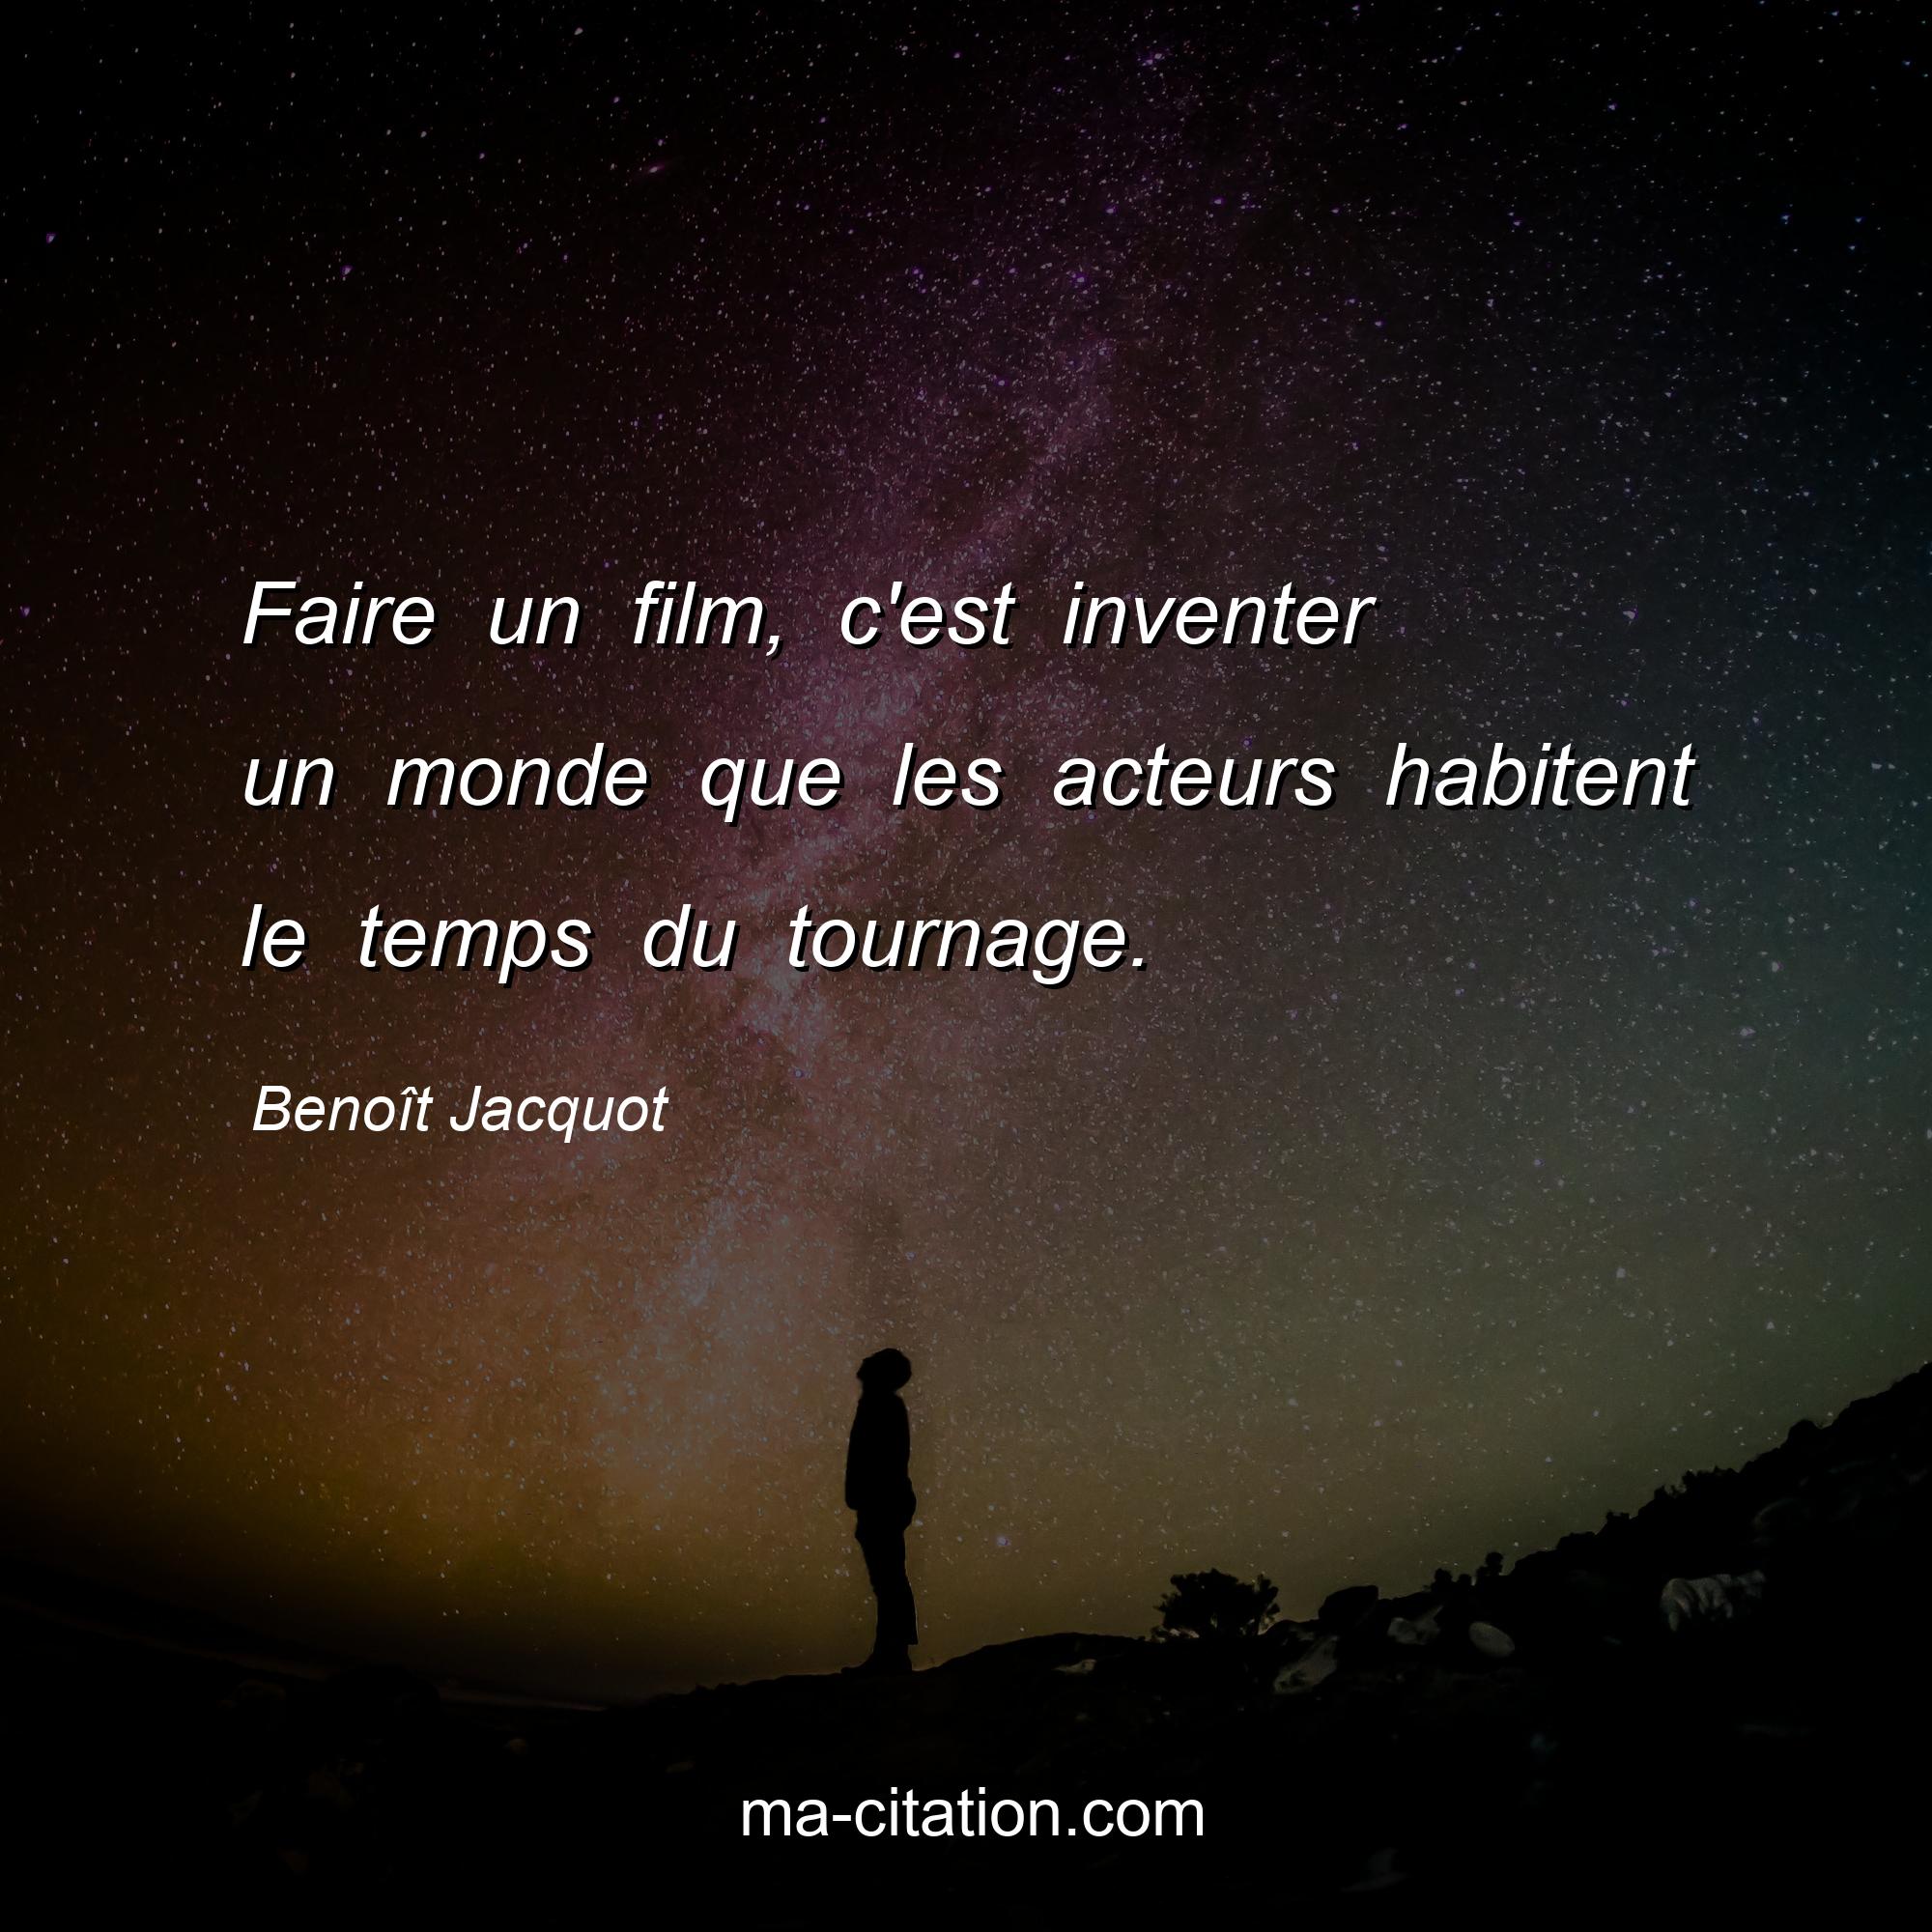 Benoît Jacquot : Faire un film, c'est inventer un monde que les acteurs habitent le temps du tournage.